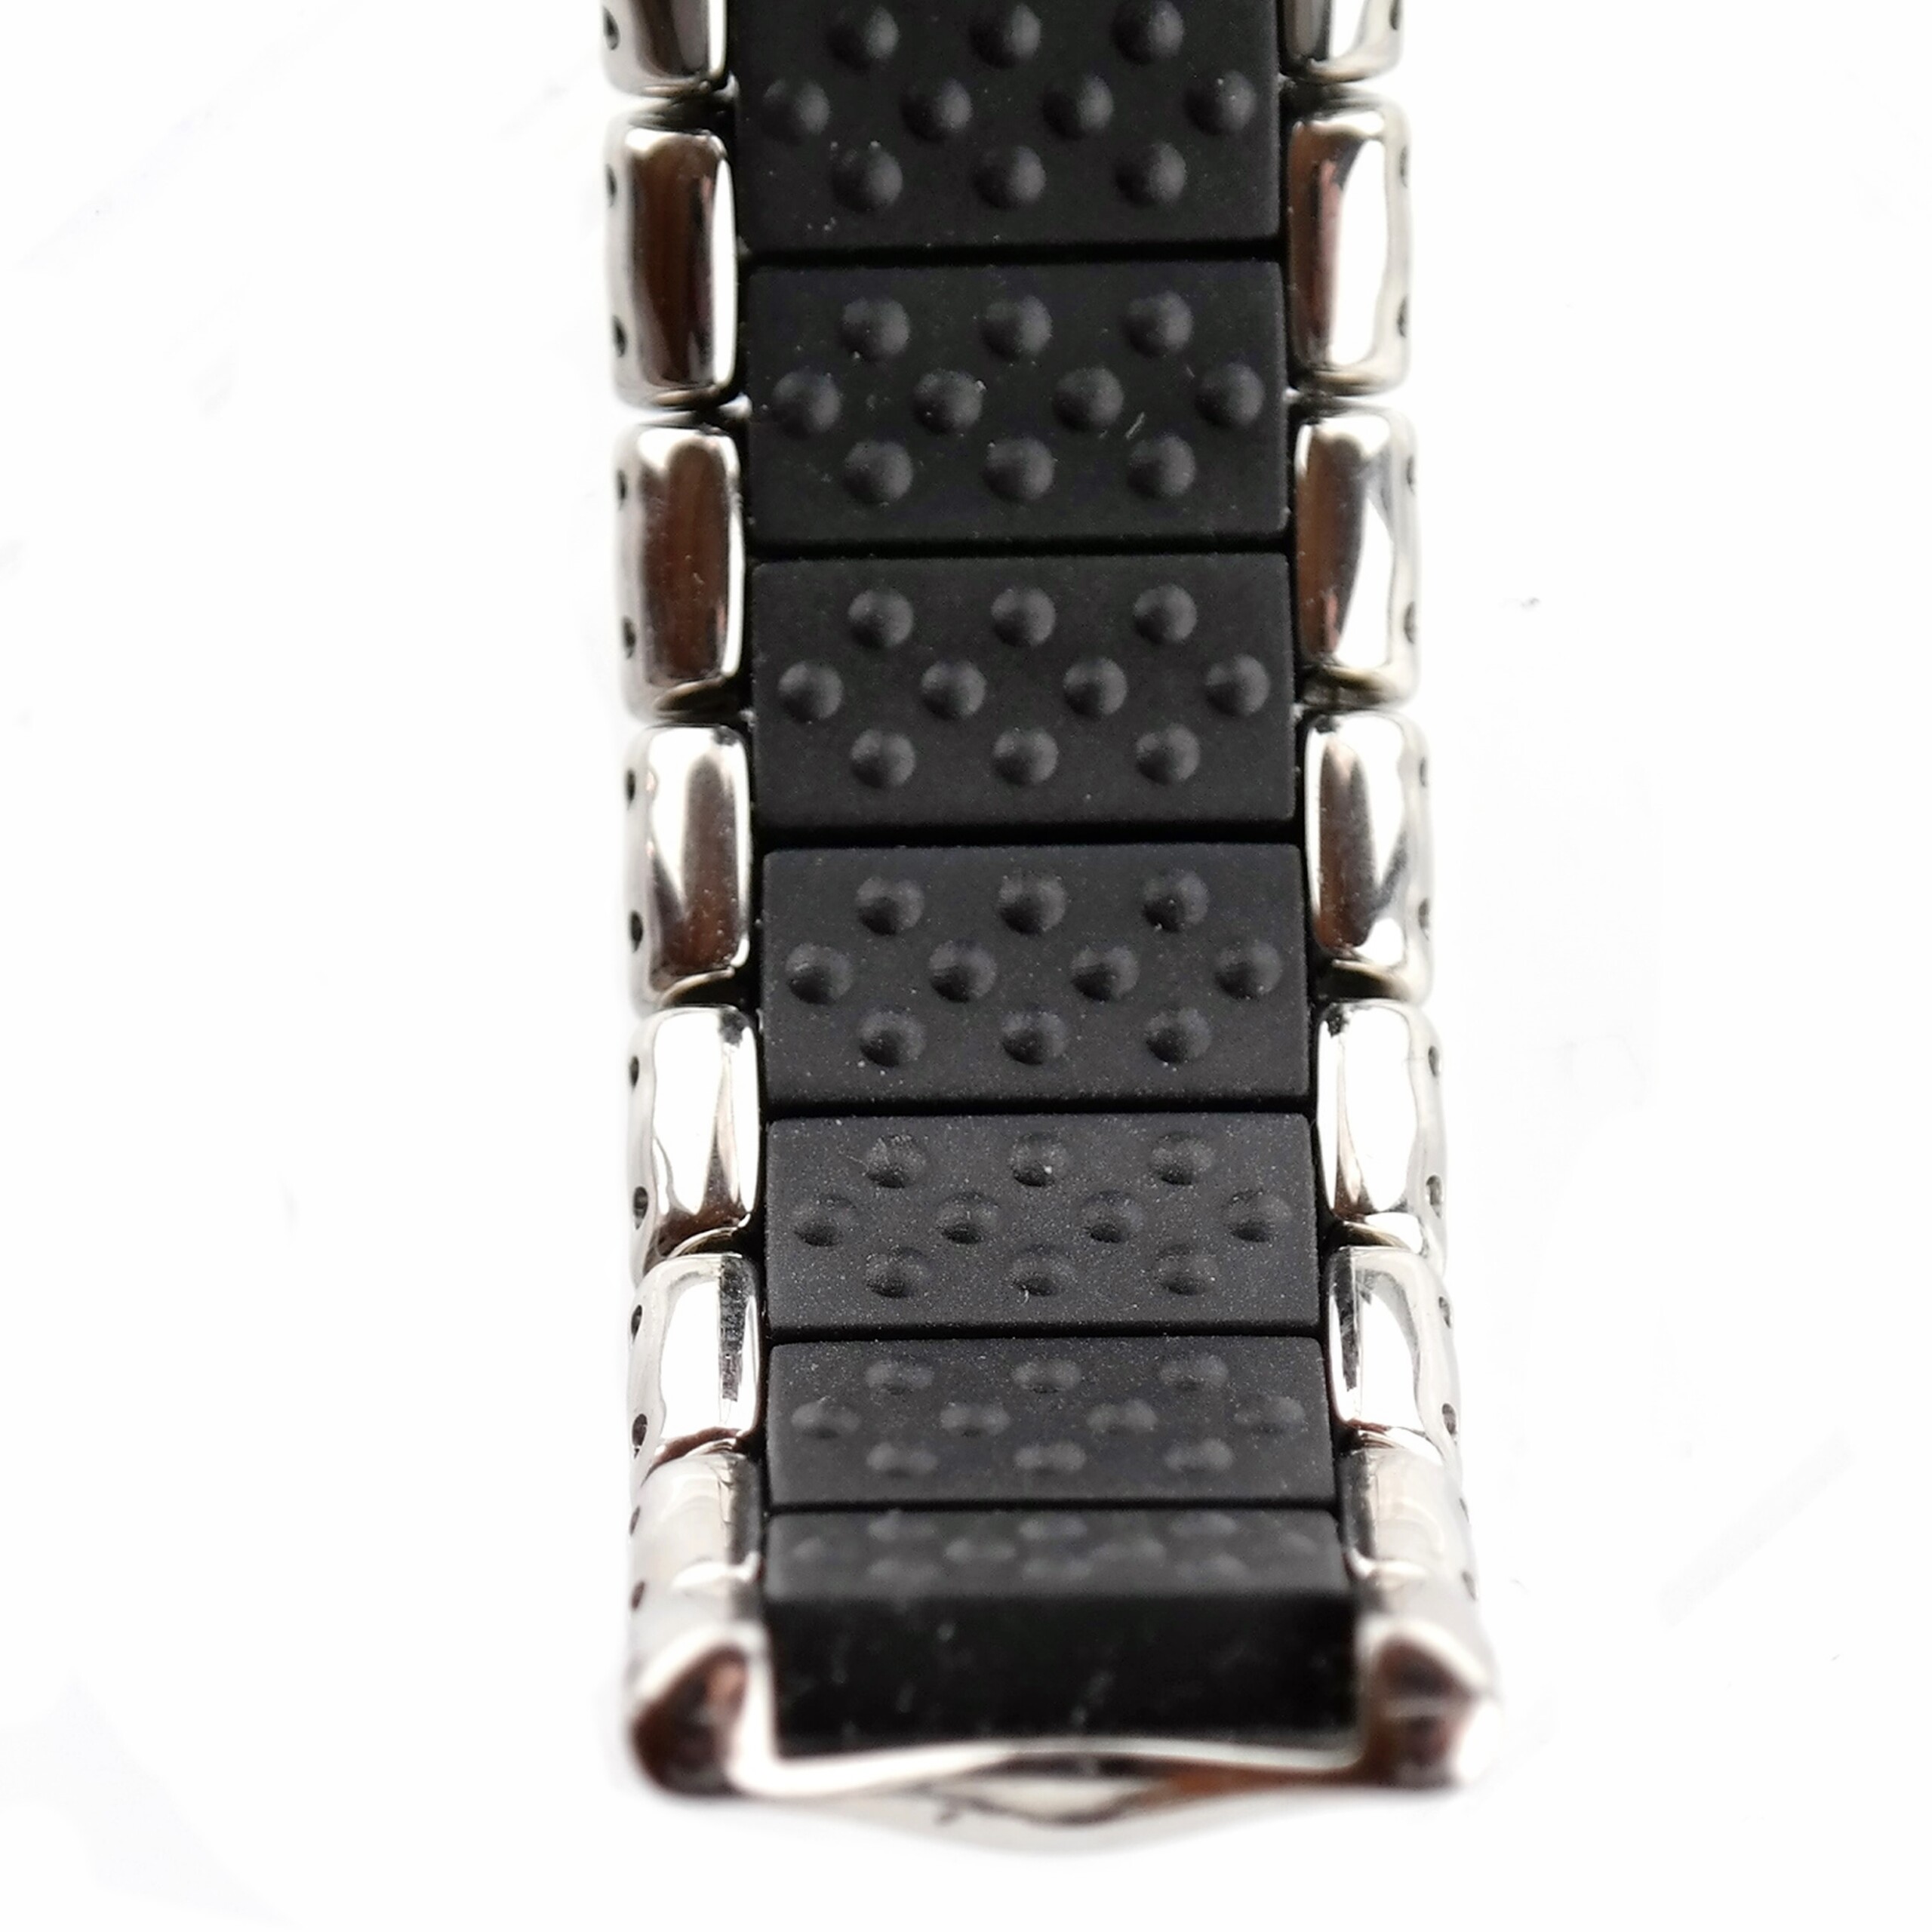 OAKLEY - Stainless Steel Watch Bracelet - 19 mm